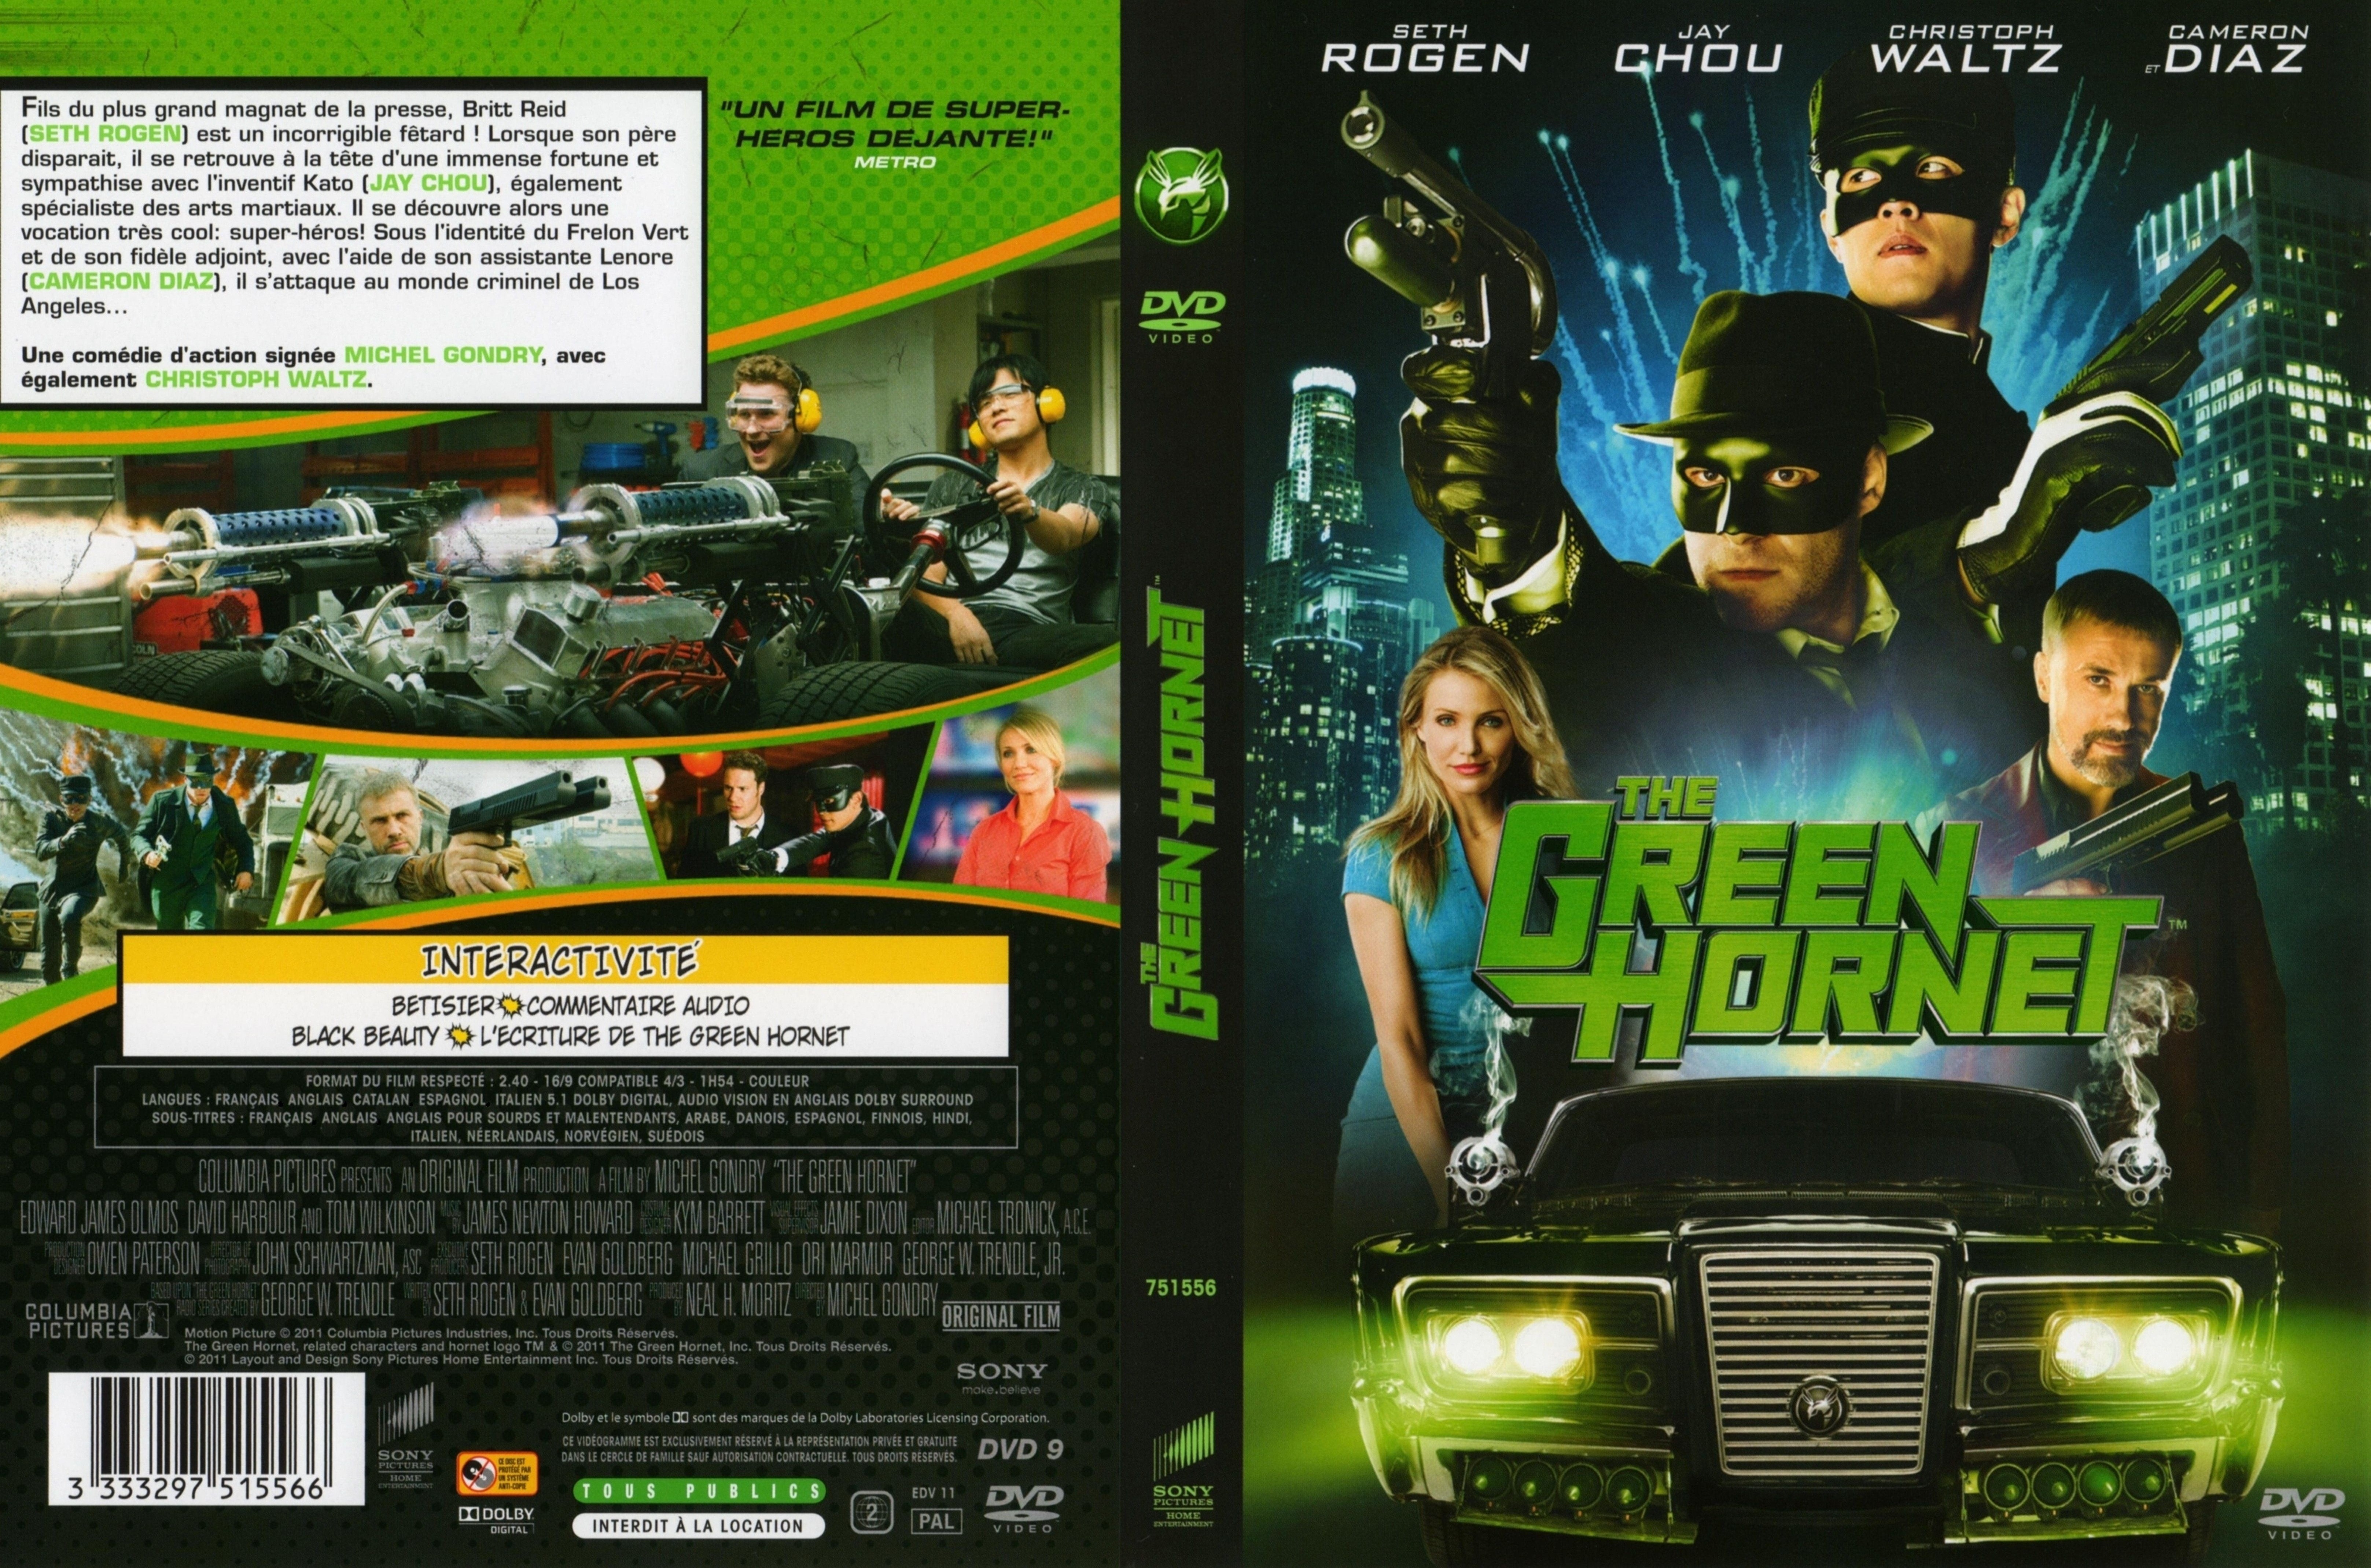 Jaquette DVD The green hornet